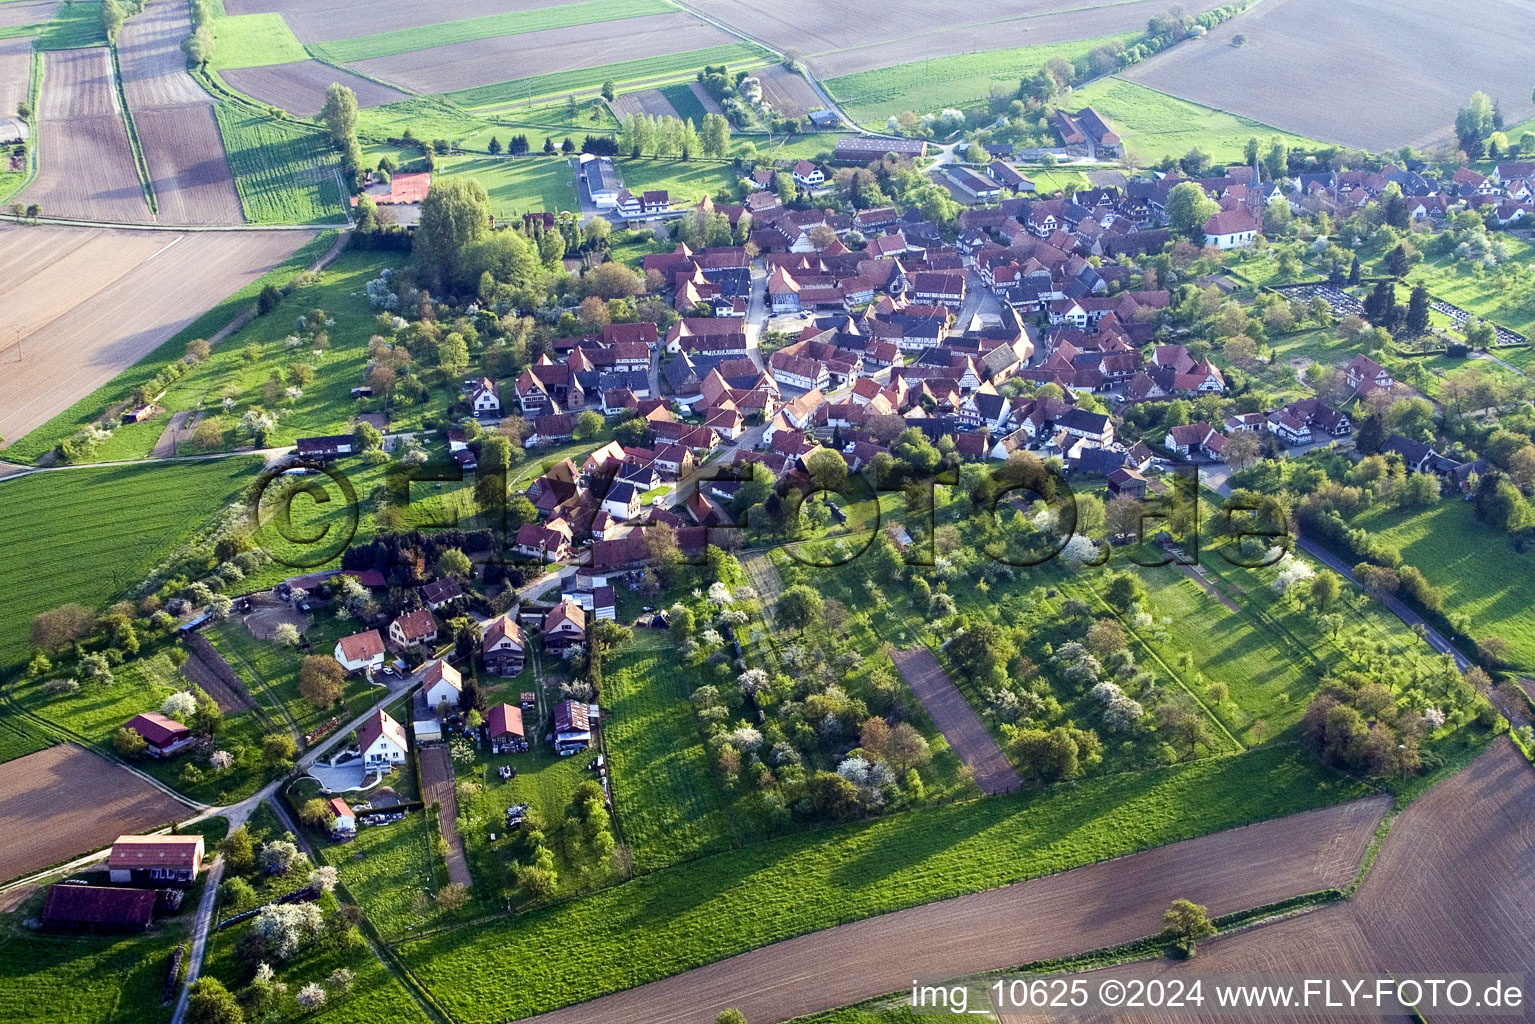 Vue aérienne de Champs agricoles et surfaces utilisables à Hunspach dans le département Bas Rhin, France